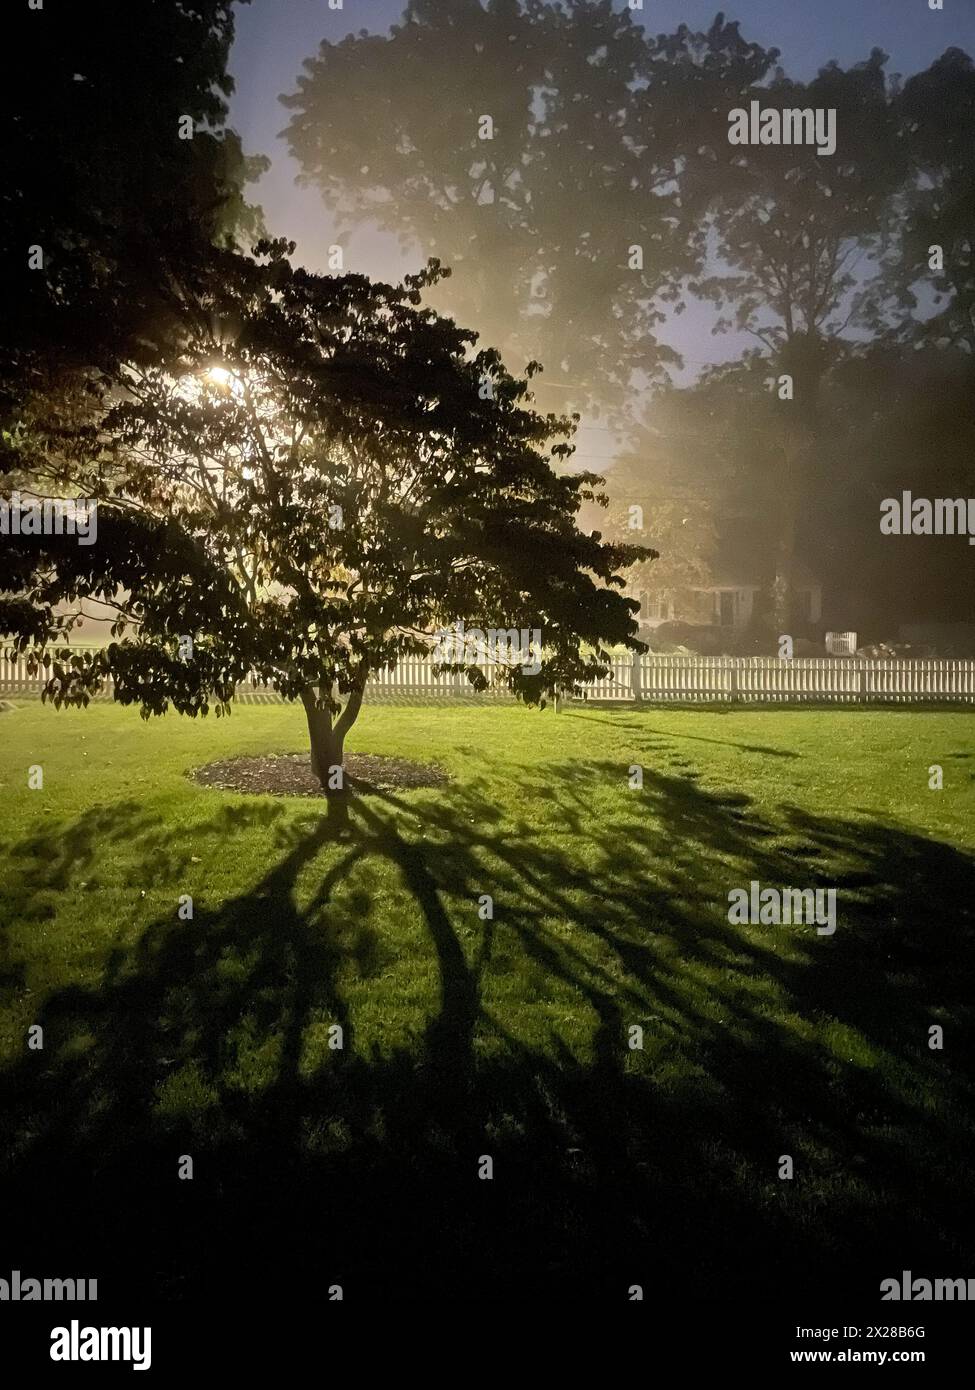 Lumière de rue projetant de l'ombre sur la pelouse à travers un arbre Banque D'Images